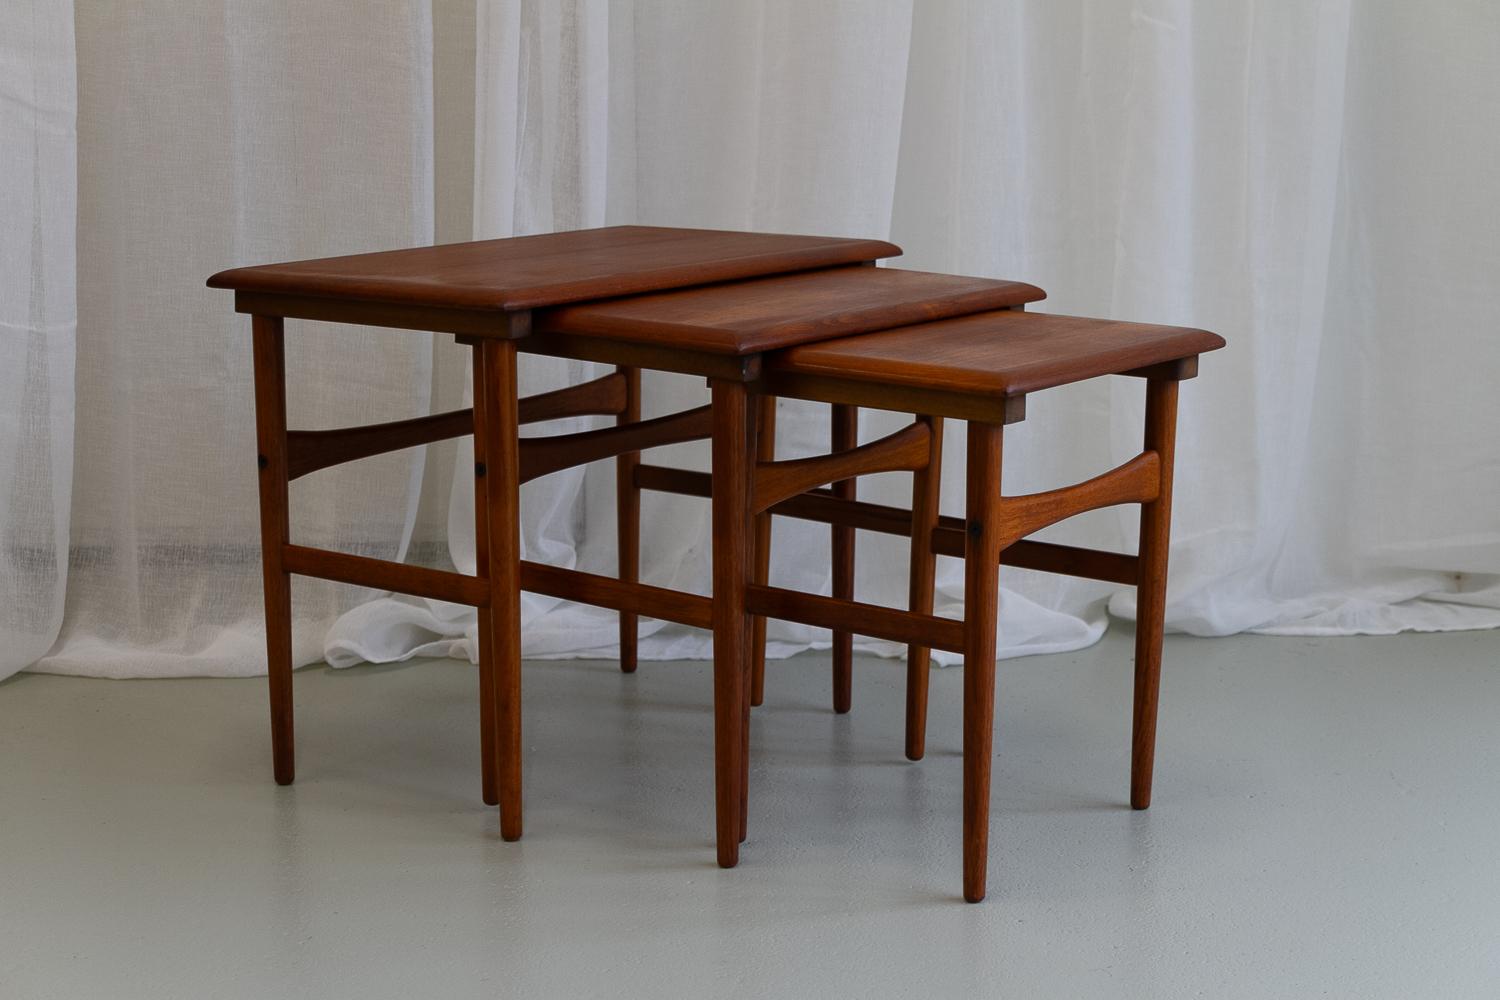 Tables gigognes danoises modernes en teck des années 1960. Ensemble de 3.

Ensemble d'élégantes tables gigognes danoises. Pieds fins, ronds et effilés et barres transversales façonnées. Large bord incliné en teck massif. Très polyvalent, il peut